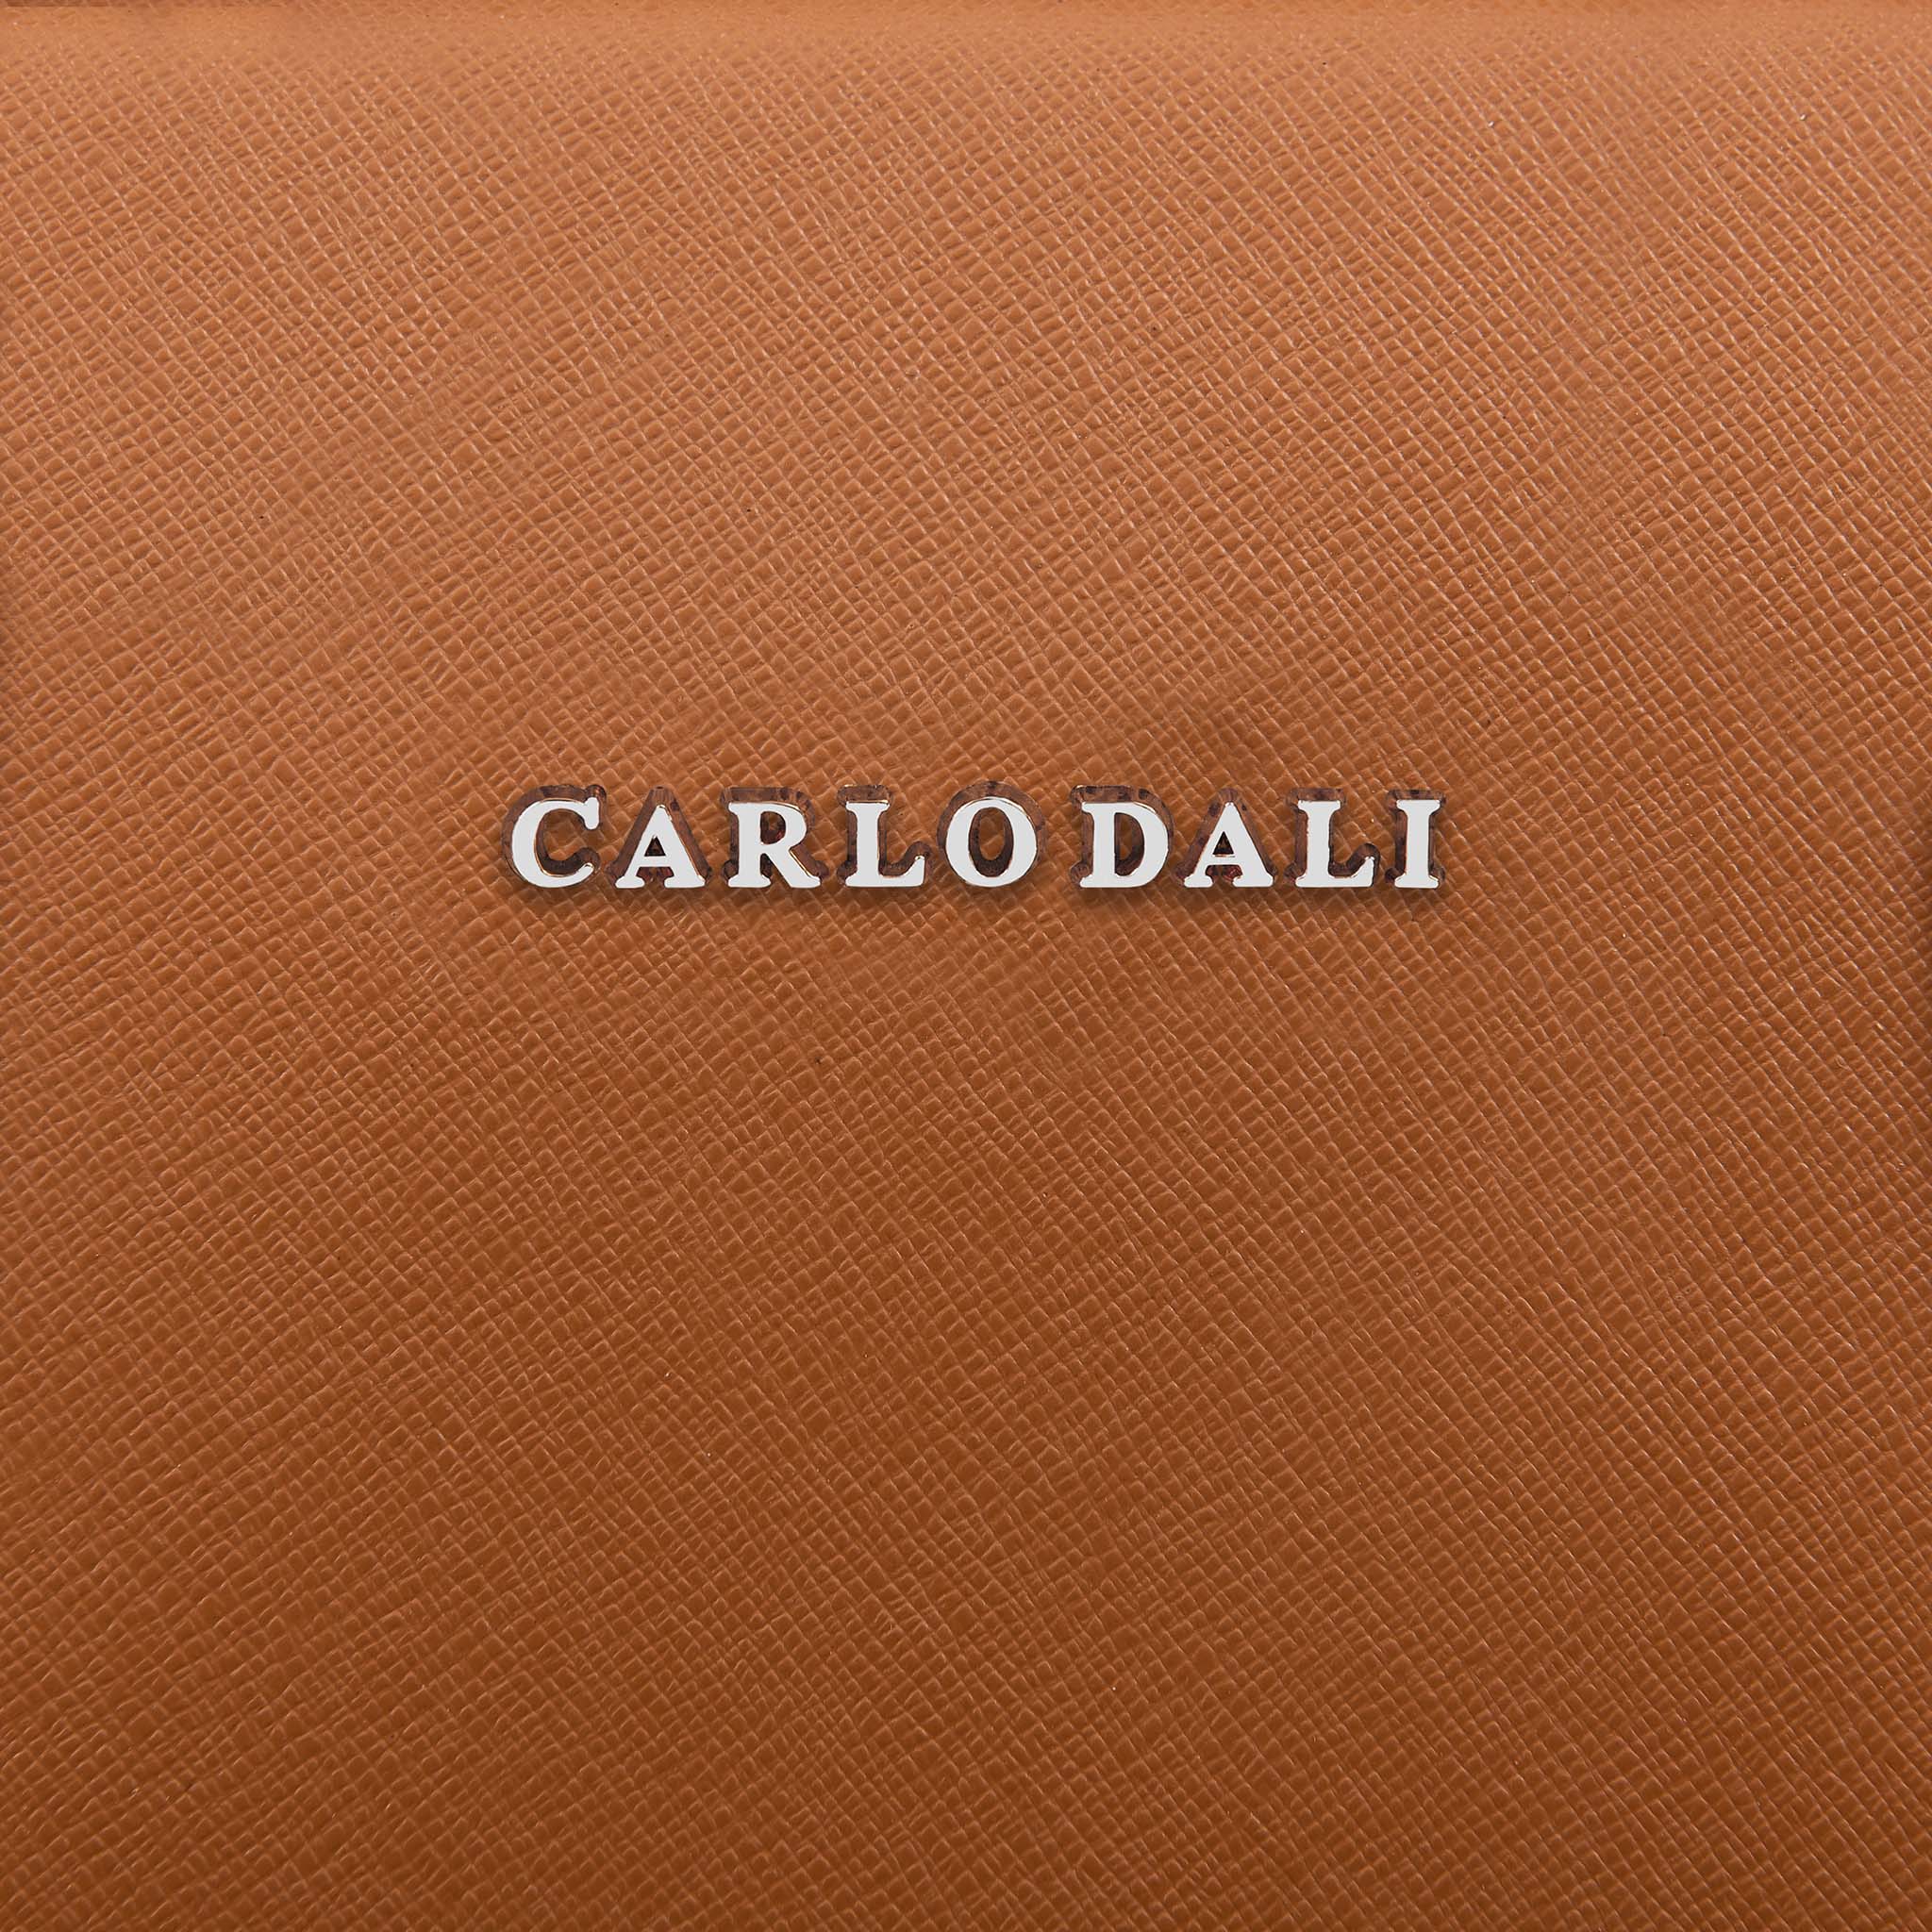 Carlo Dali "Amelia" Hand Bag